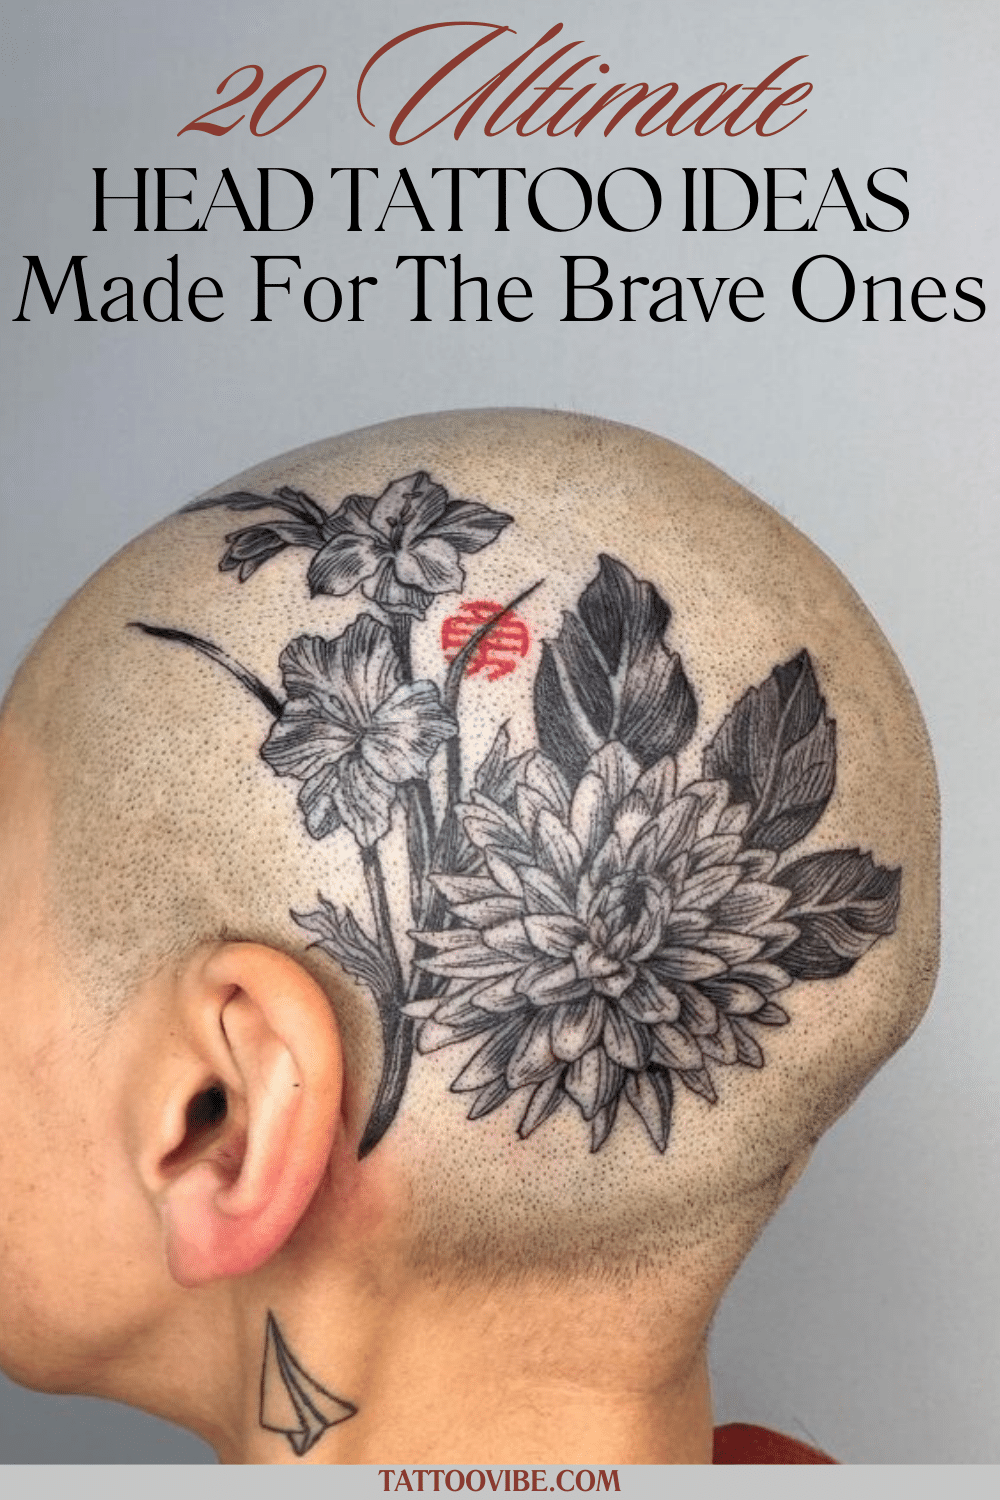 20 ideias de tatuagens na cabeça feitas para os corajosos